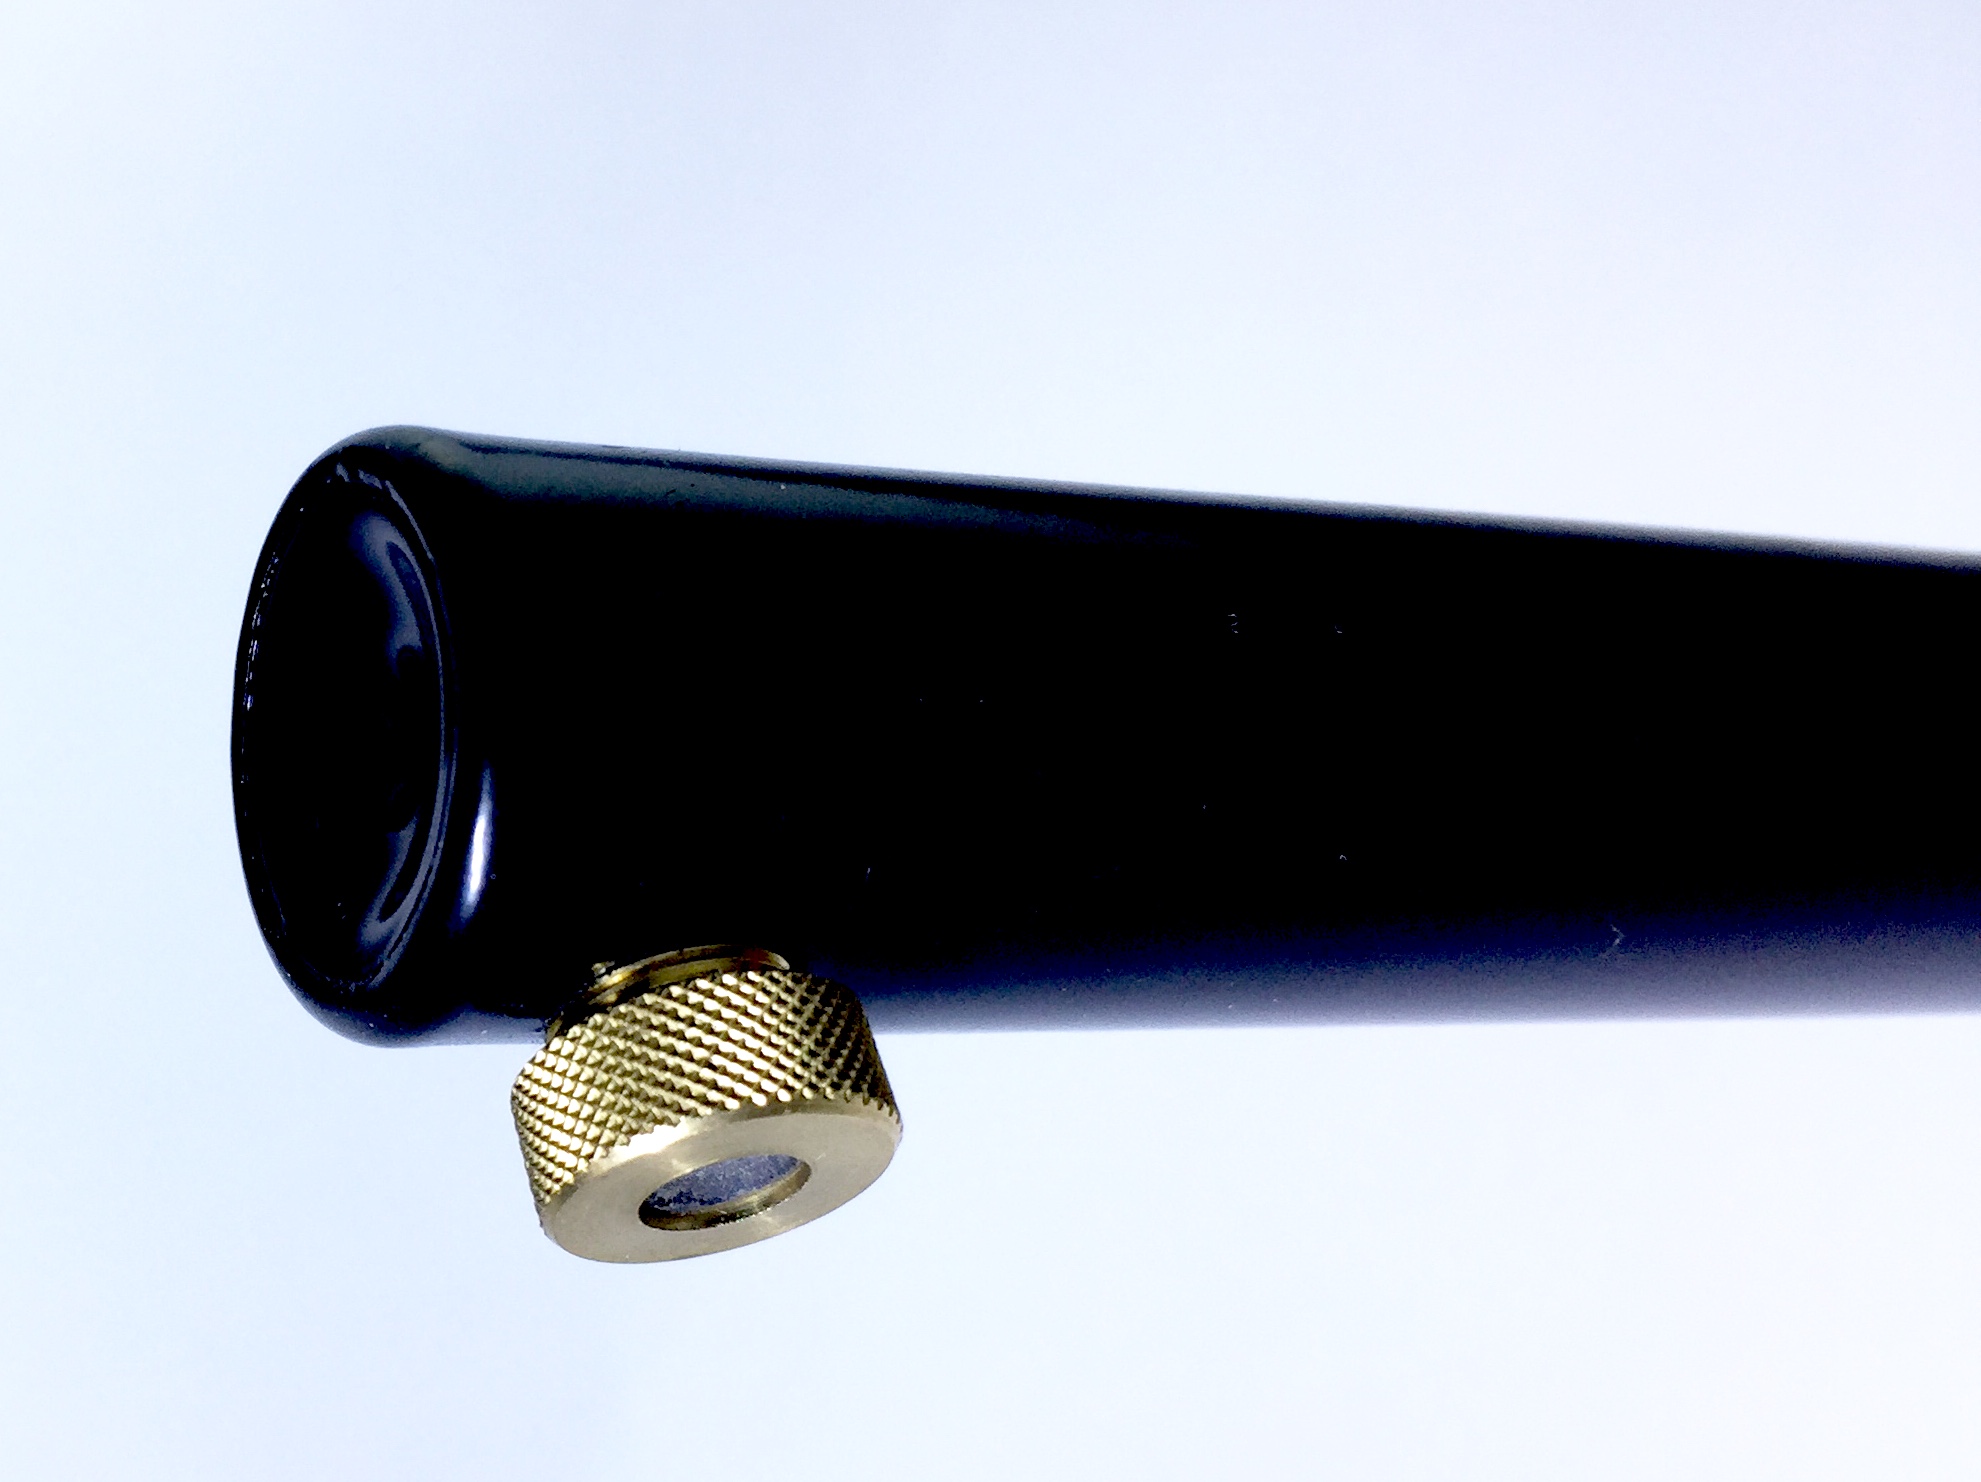 Pompe pneumatique, noire 40 cm